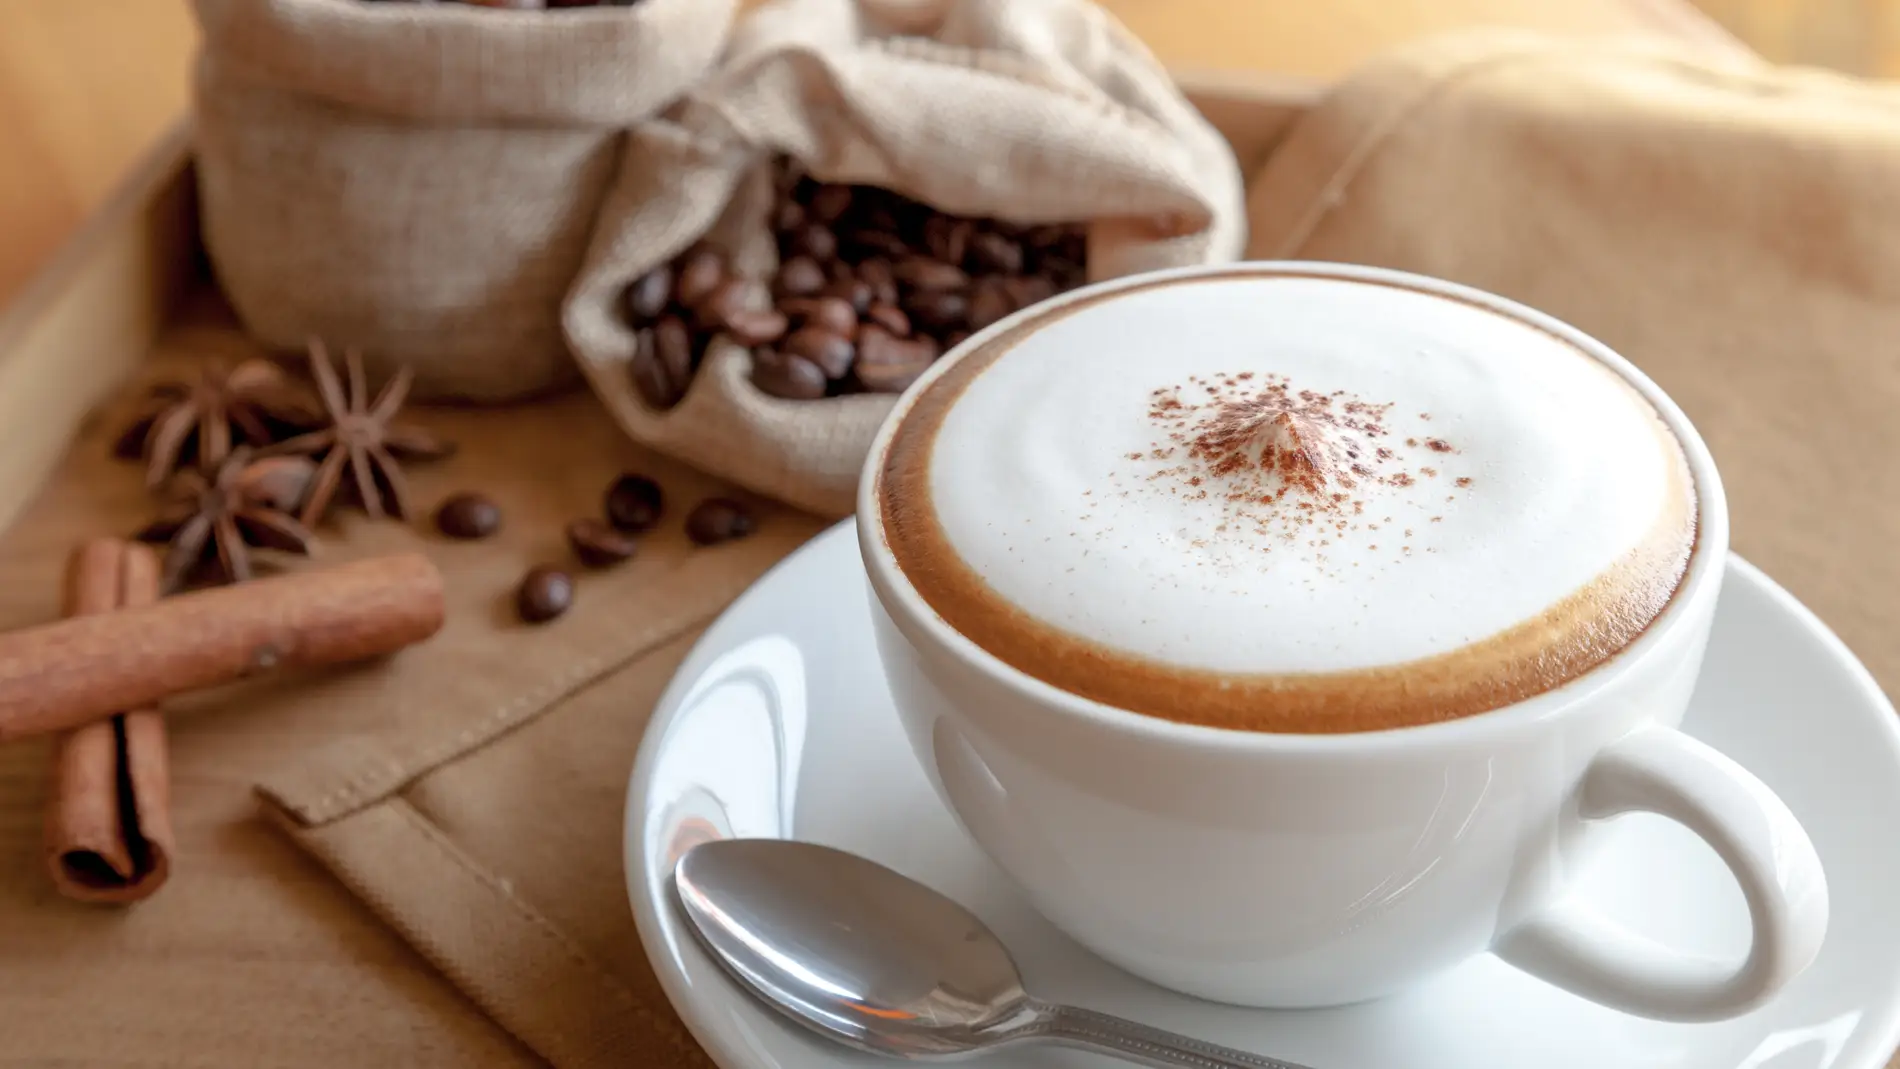 El aparato que necesitas para hacer crema (¡no espuma!) en tu café con leche